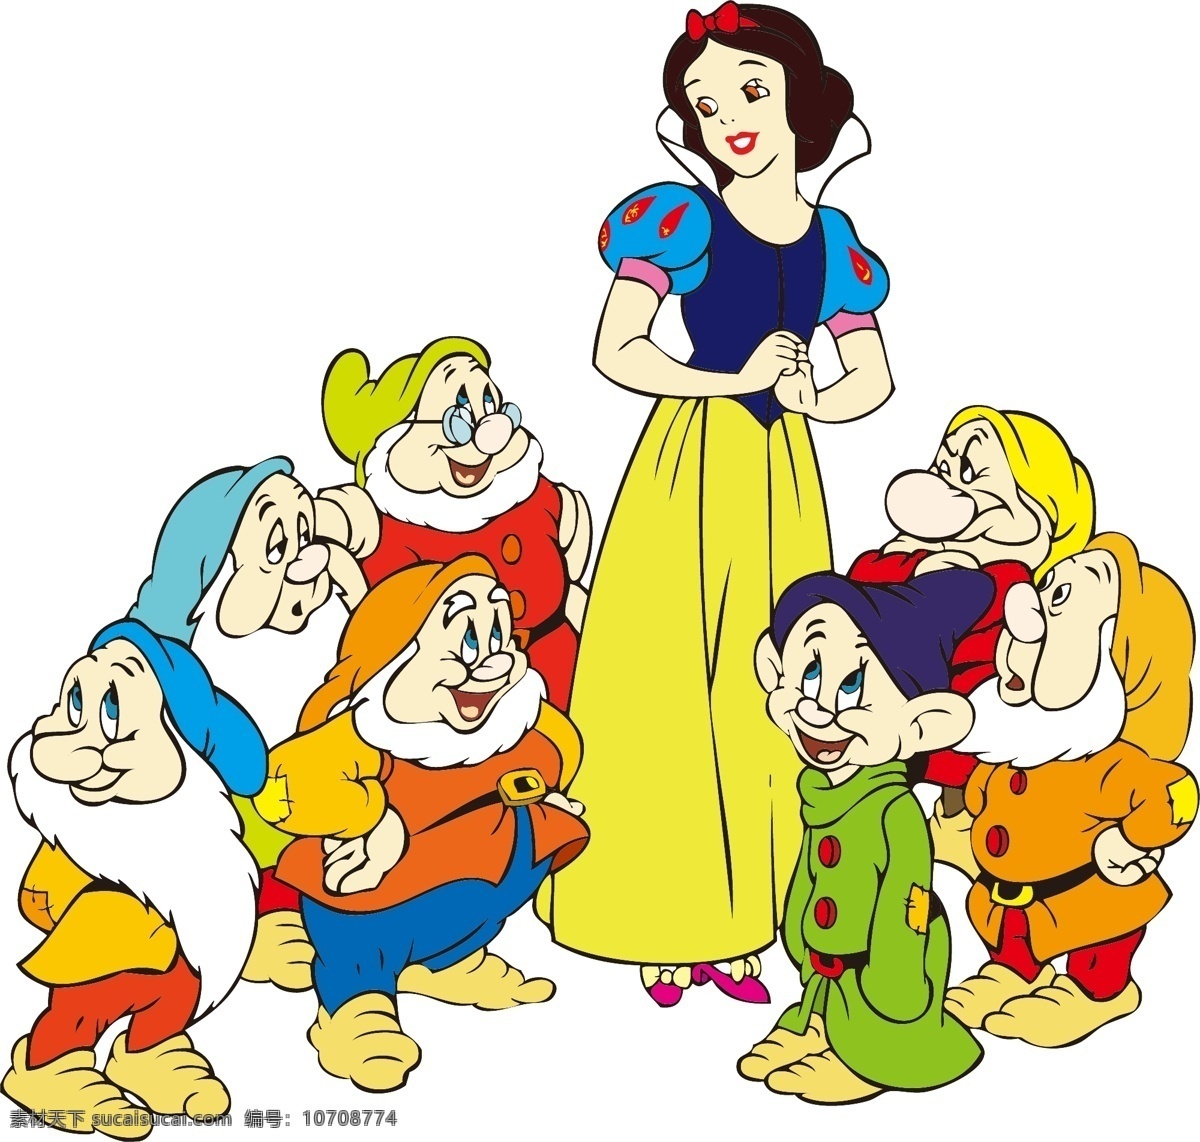 白雪公主 七 小 矮 人 小矮人 迪士尼 卡通 人物 矢量白雪公主 矢量人物 其他人物 矢量